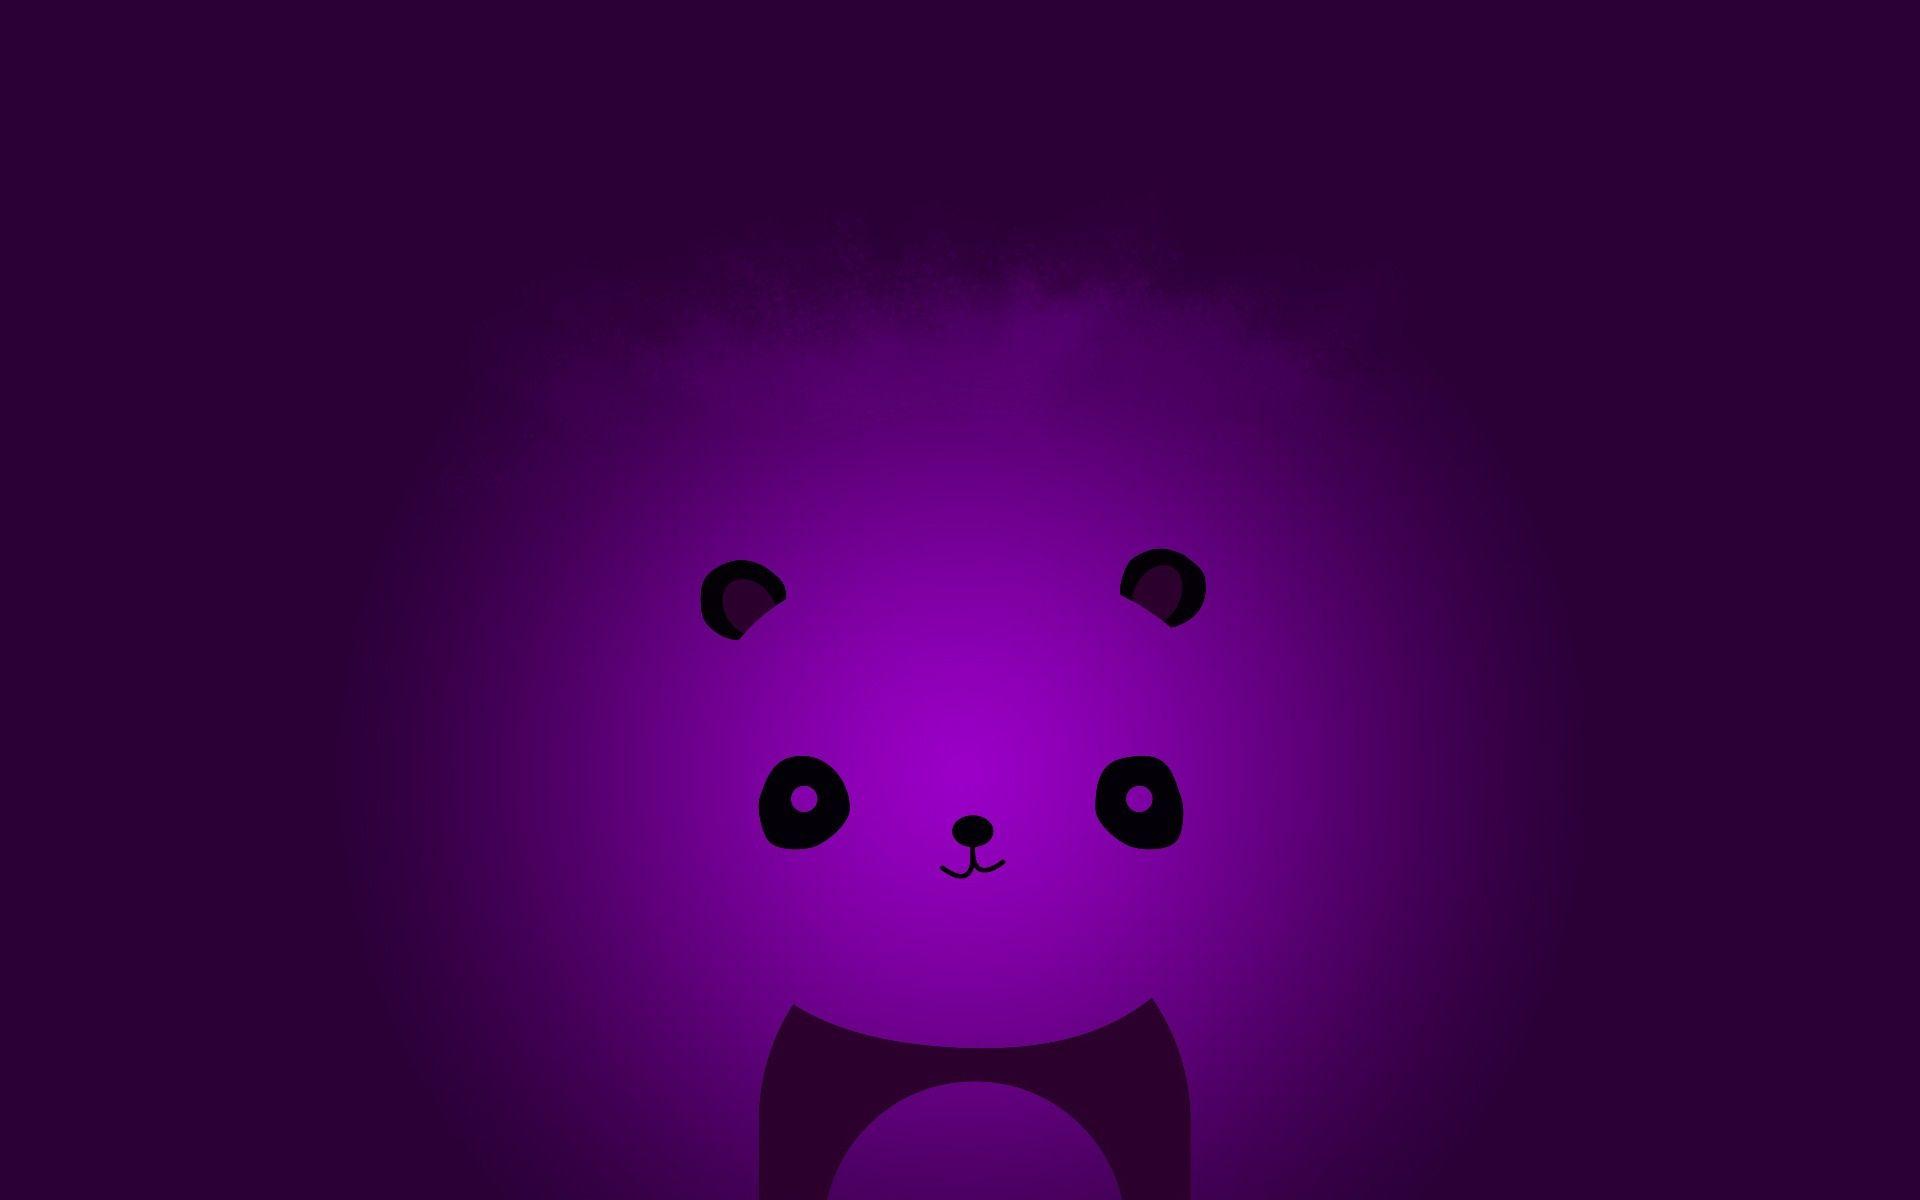 Abstract minimalistic violet panda bears wallpaperx1200